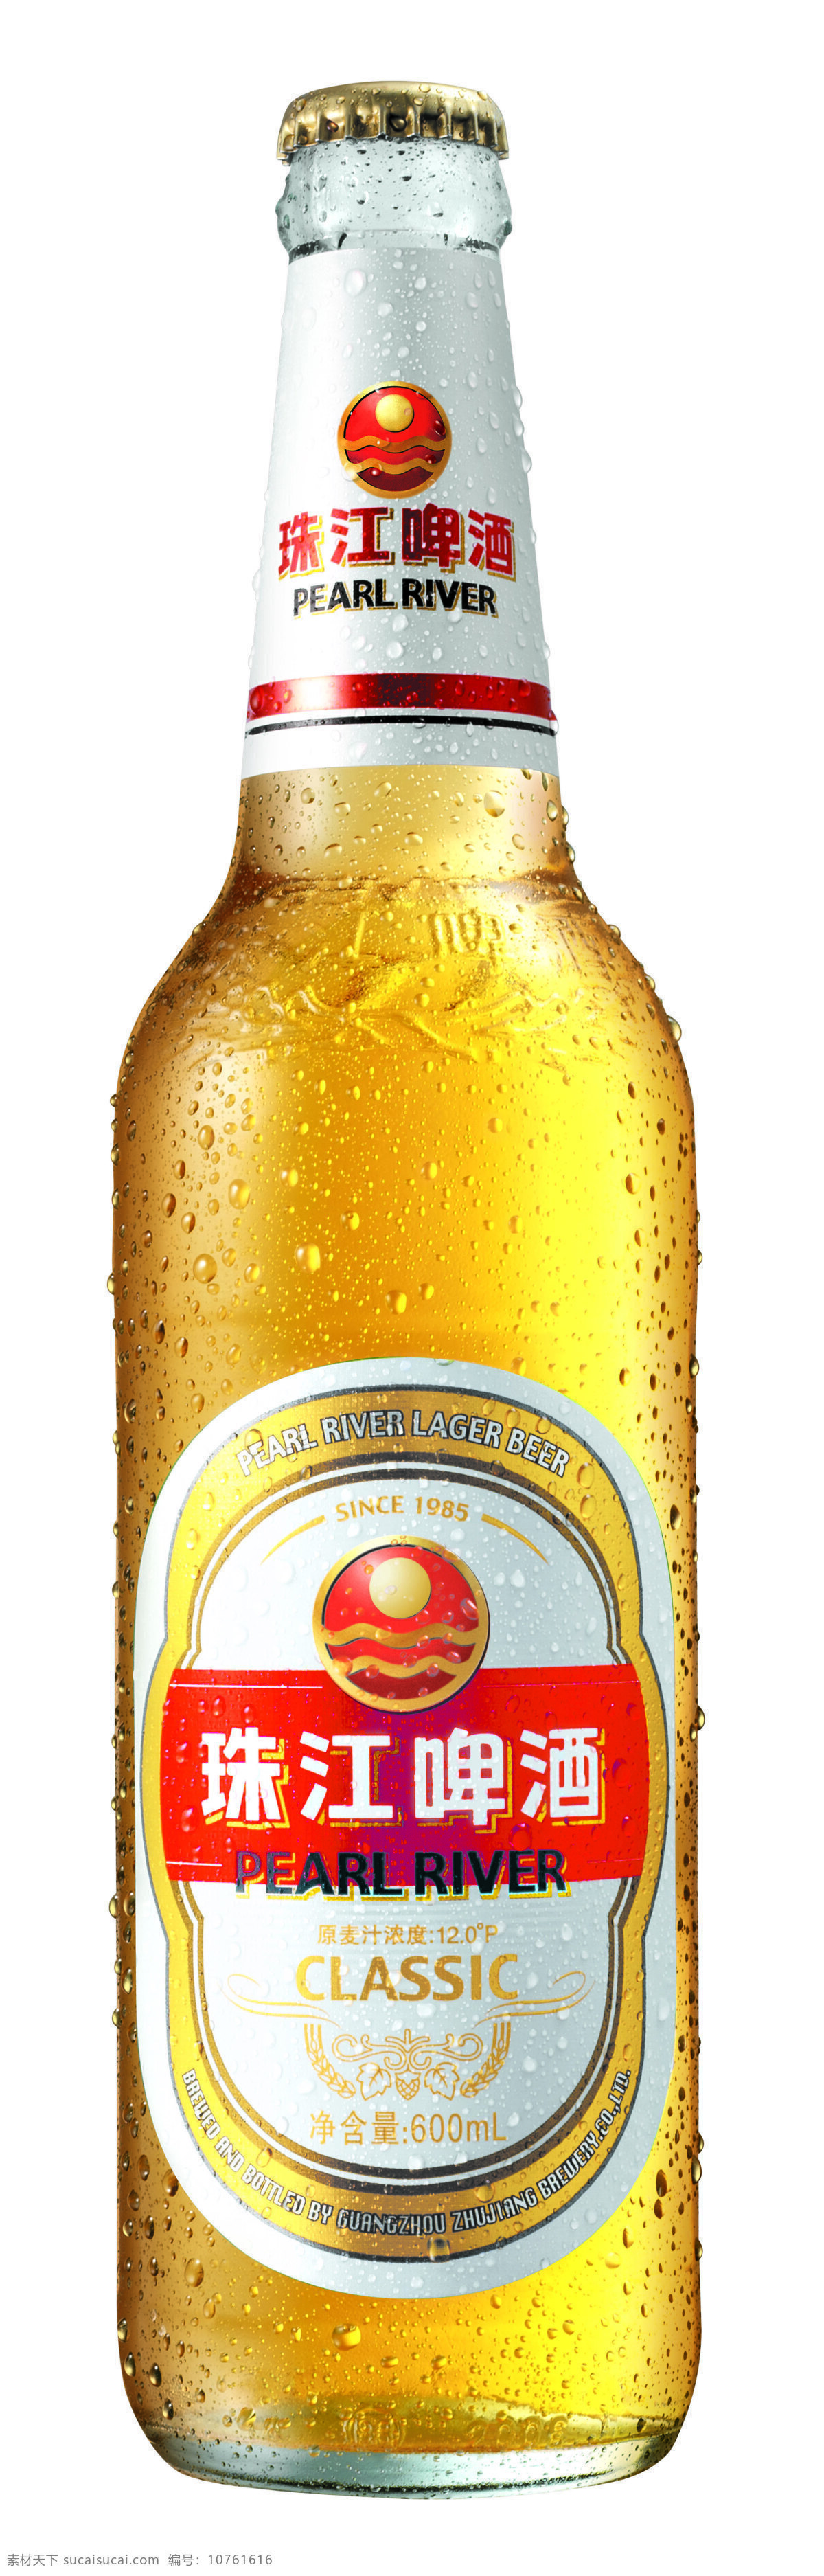 白 瓶 经典 餐饮美食 啤酒 饮料酒水 珠江 珠江啤酒 白瓶经典 白瓶 矢量图 日常生活